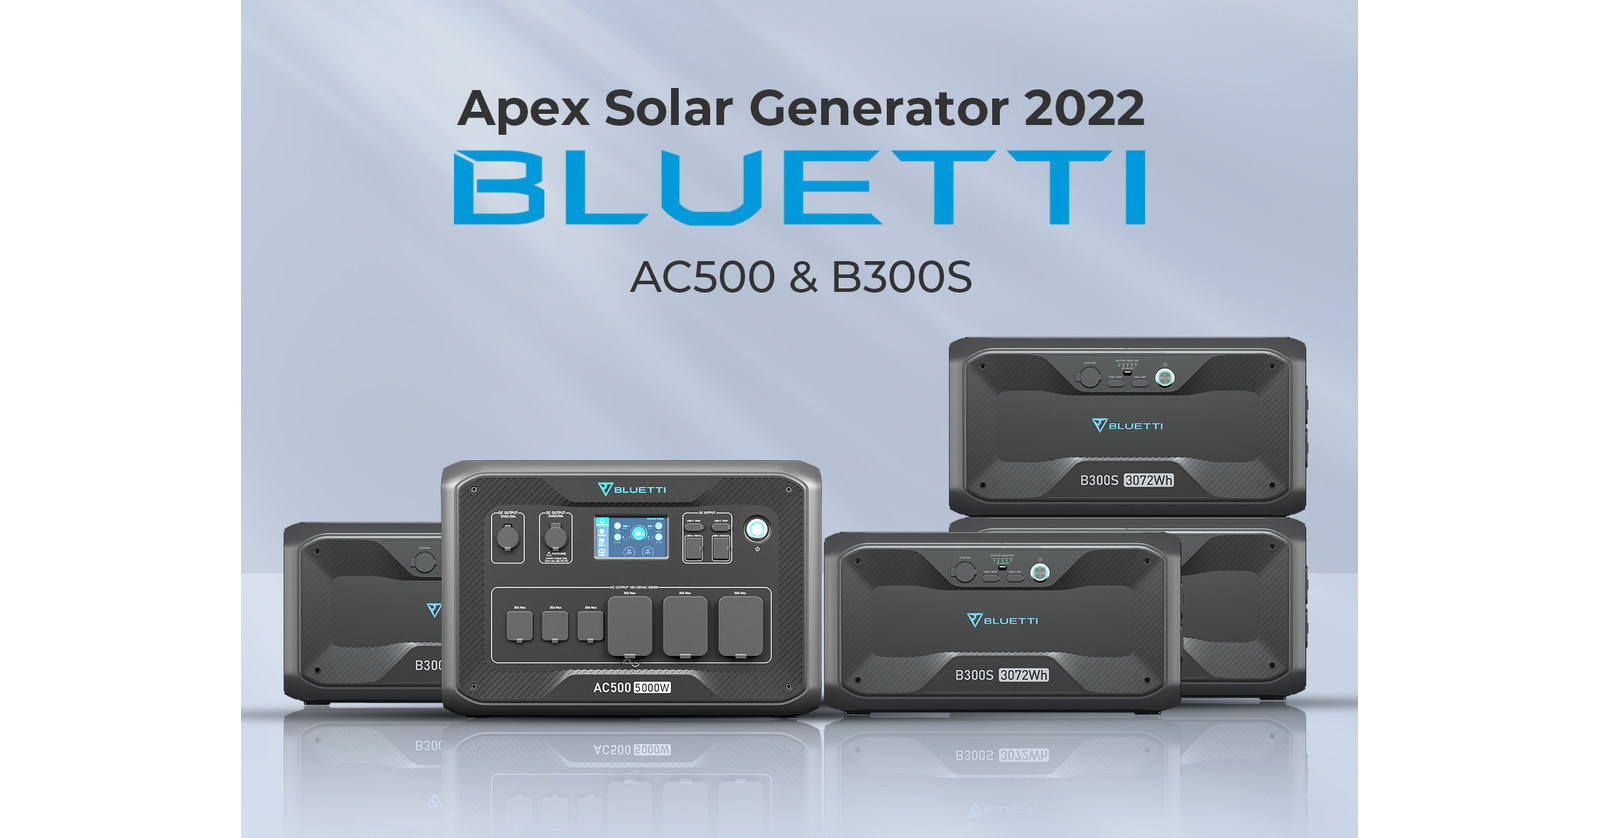 Bluetti Ac500 Power Station 5000w Portable Generator - Ac500